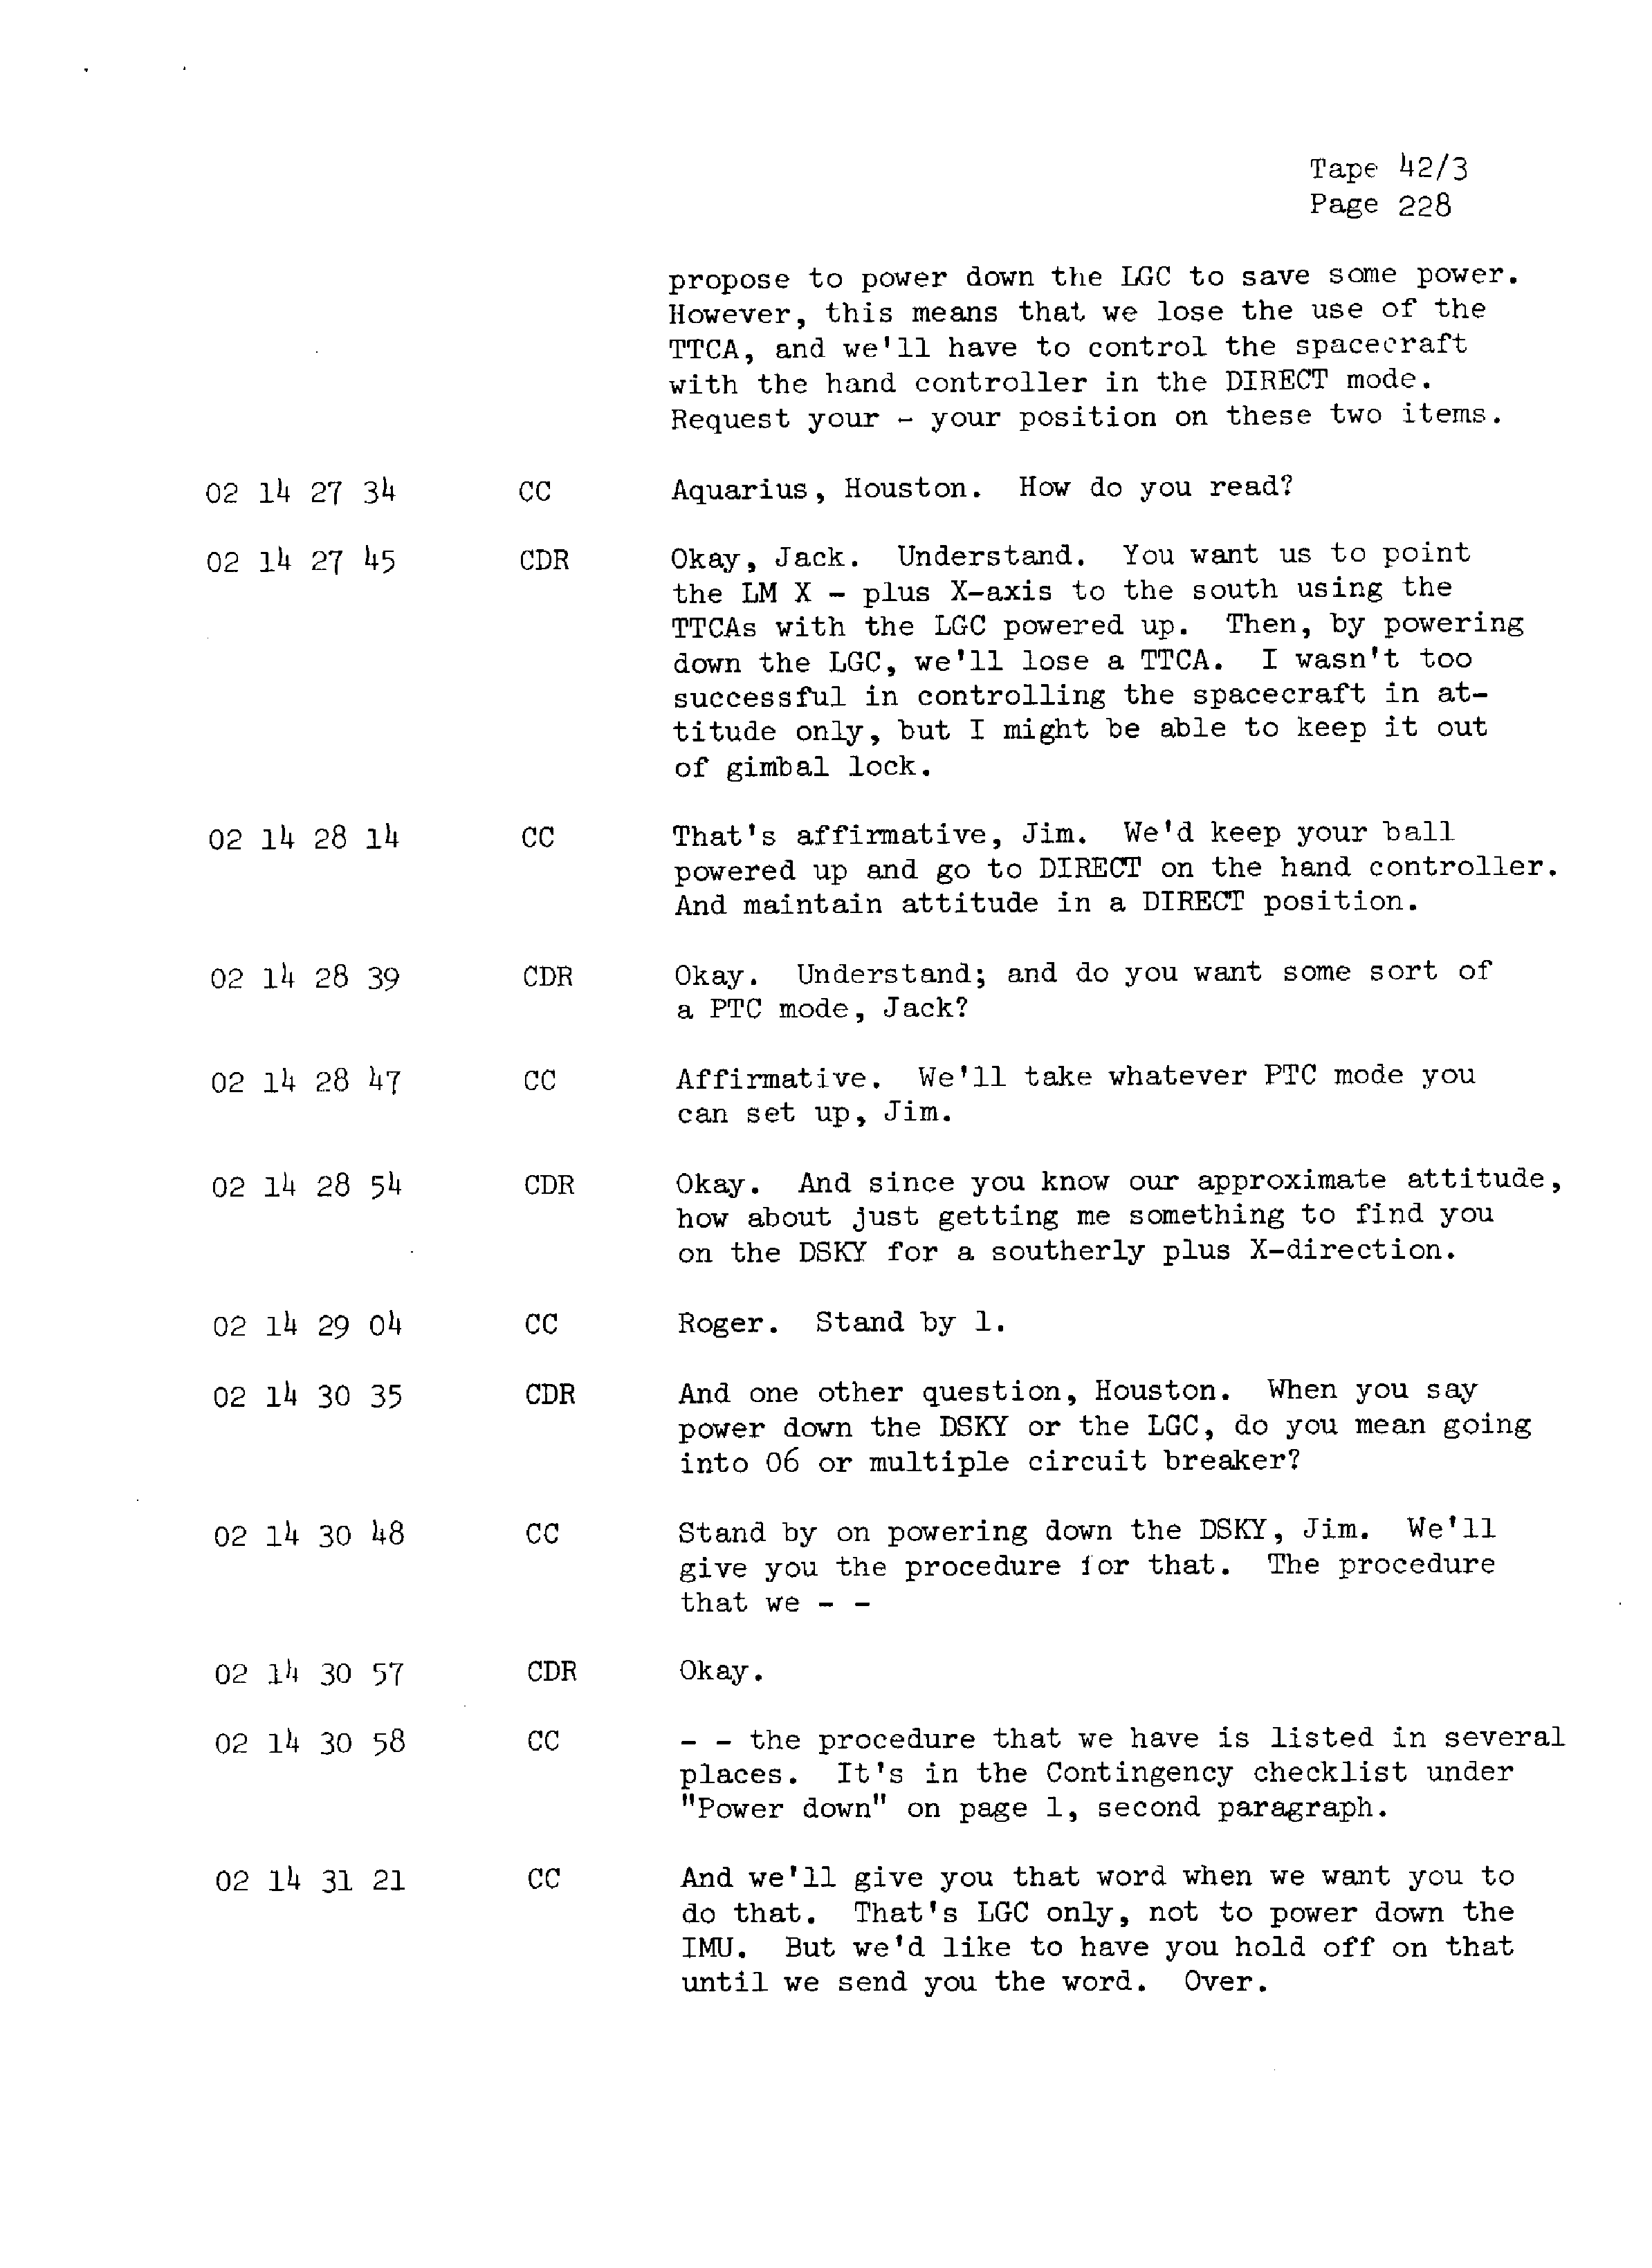 Page 235 of Apollo 13’s original transcript